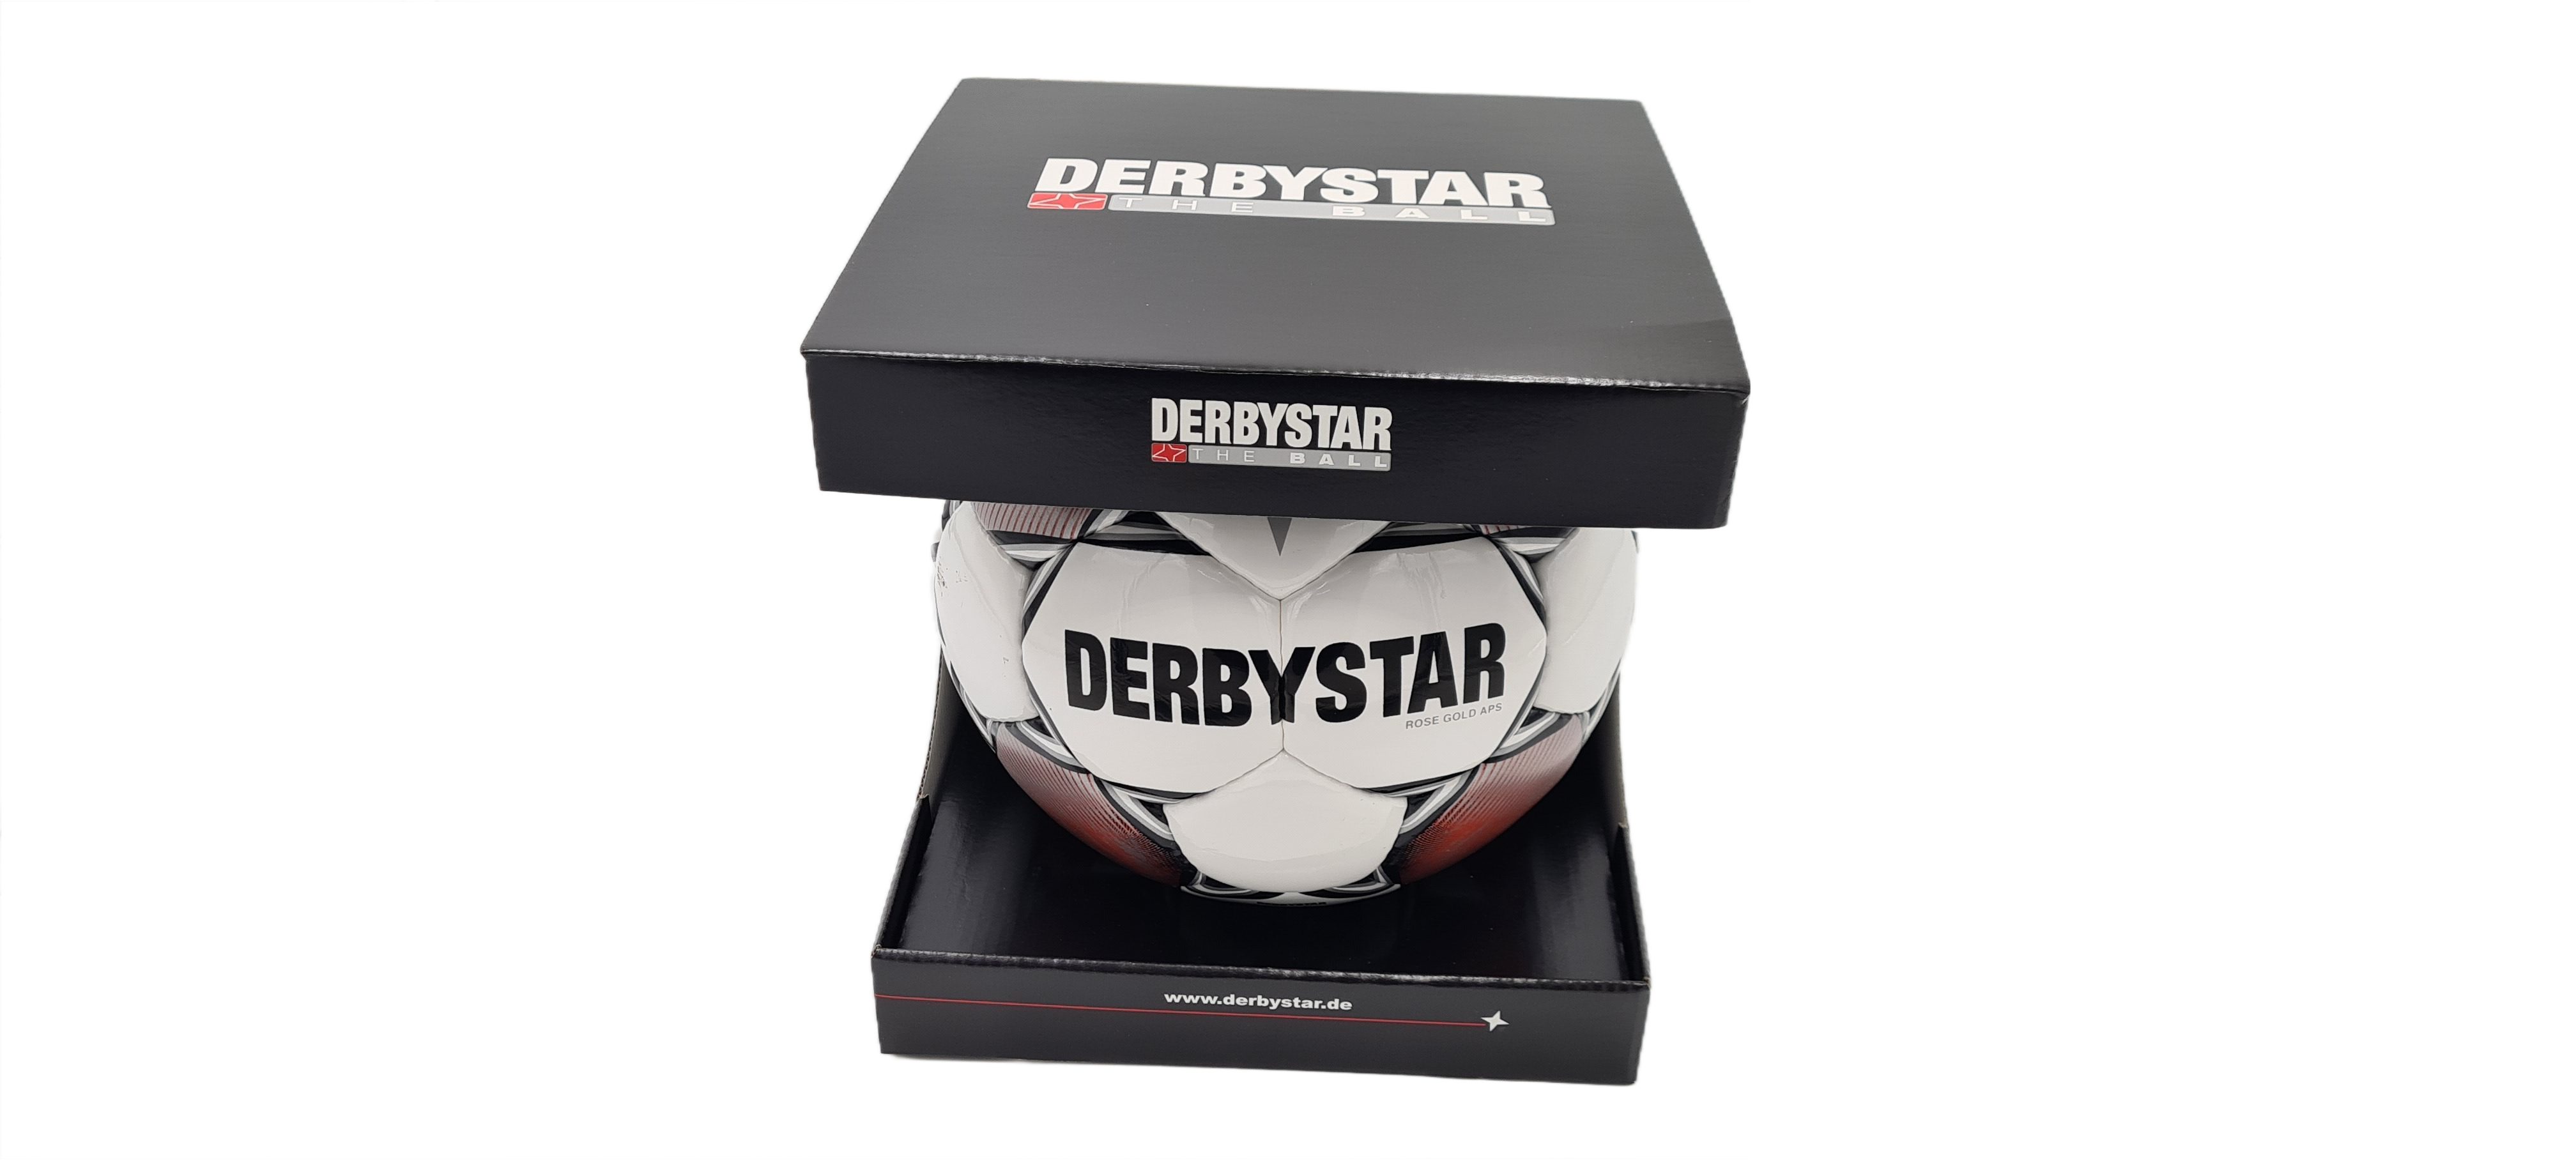 Derbystar Fußball Rose Gold APS Spielball / Matchball in Geschenkbox